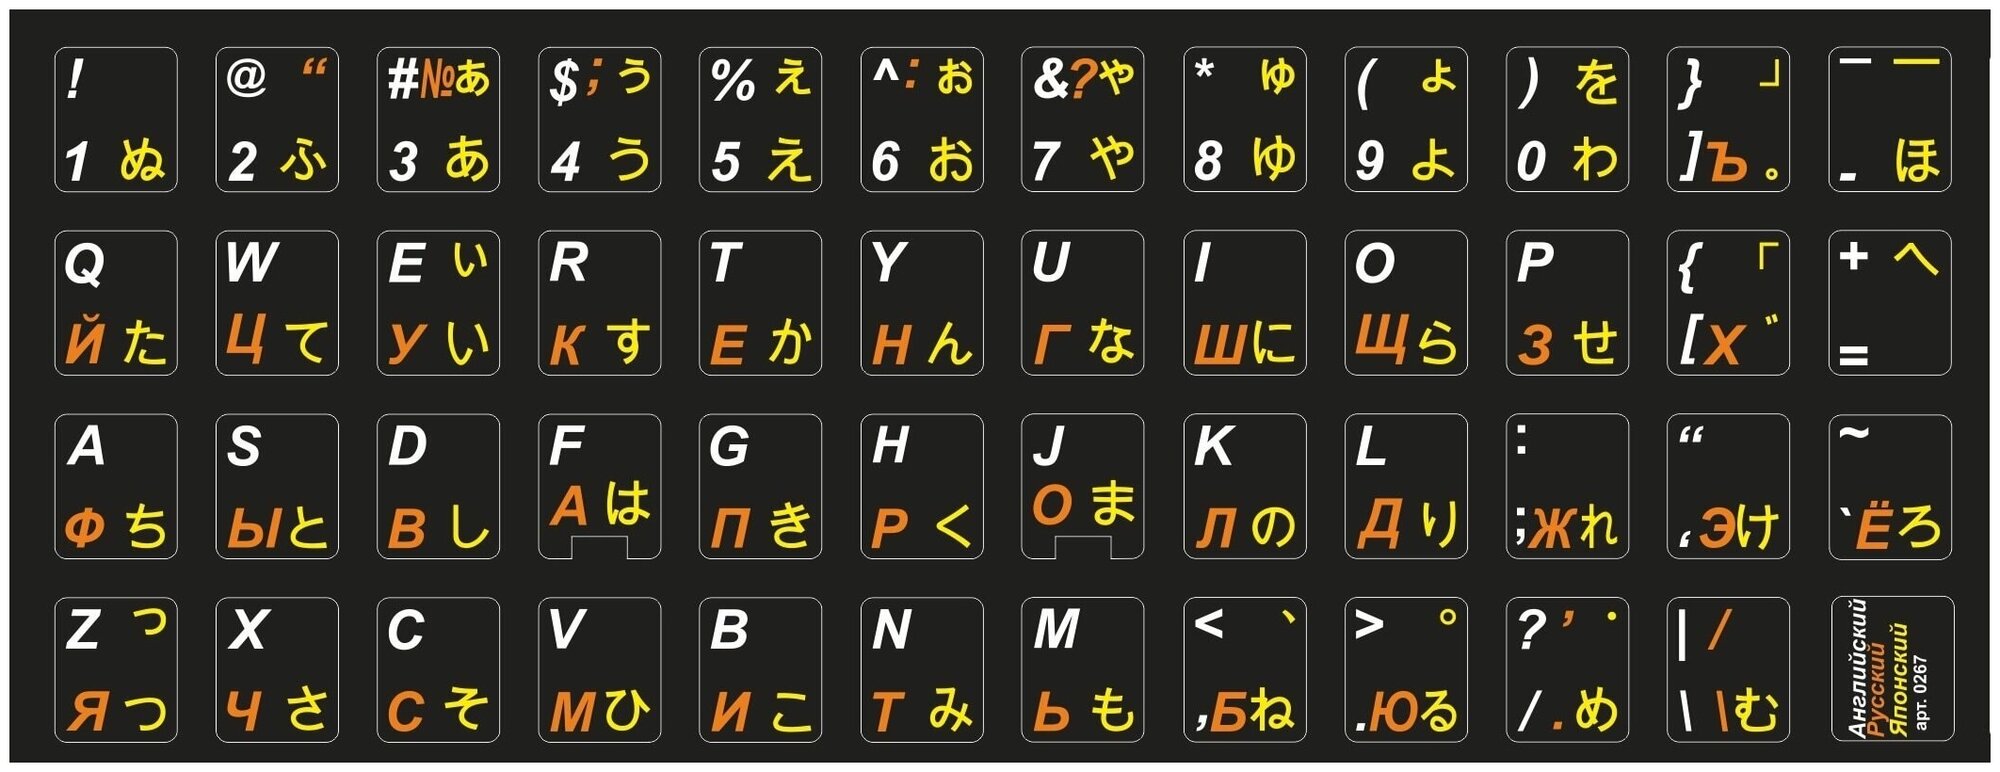 Японские, английские, русские буквы на клавиатуру, наклейки букв 11x13 мм.